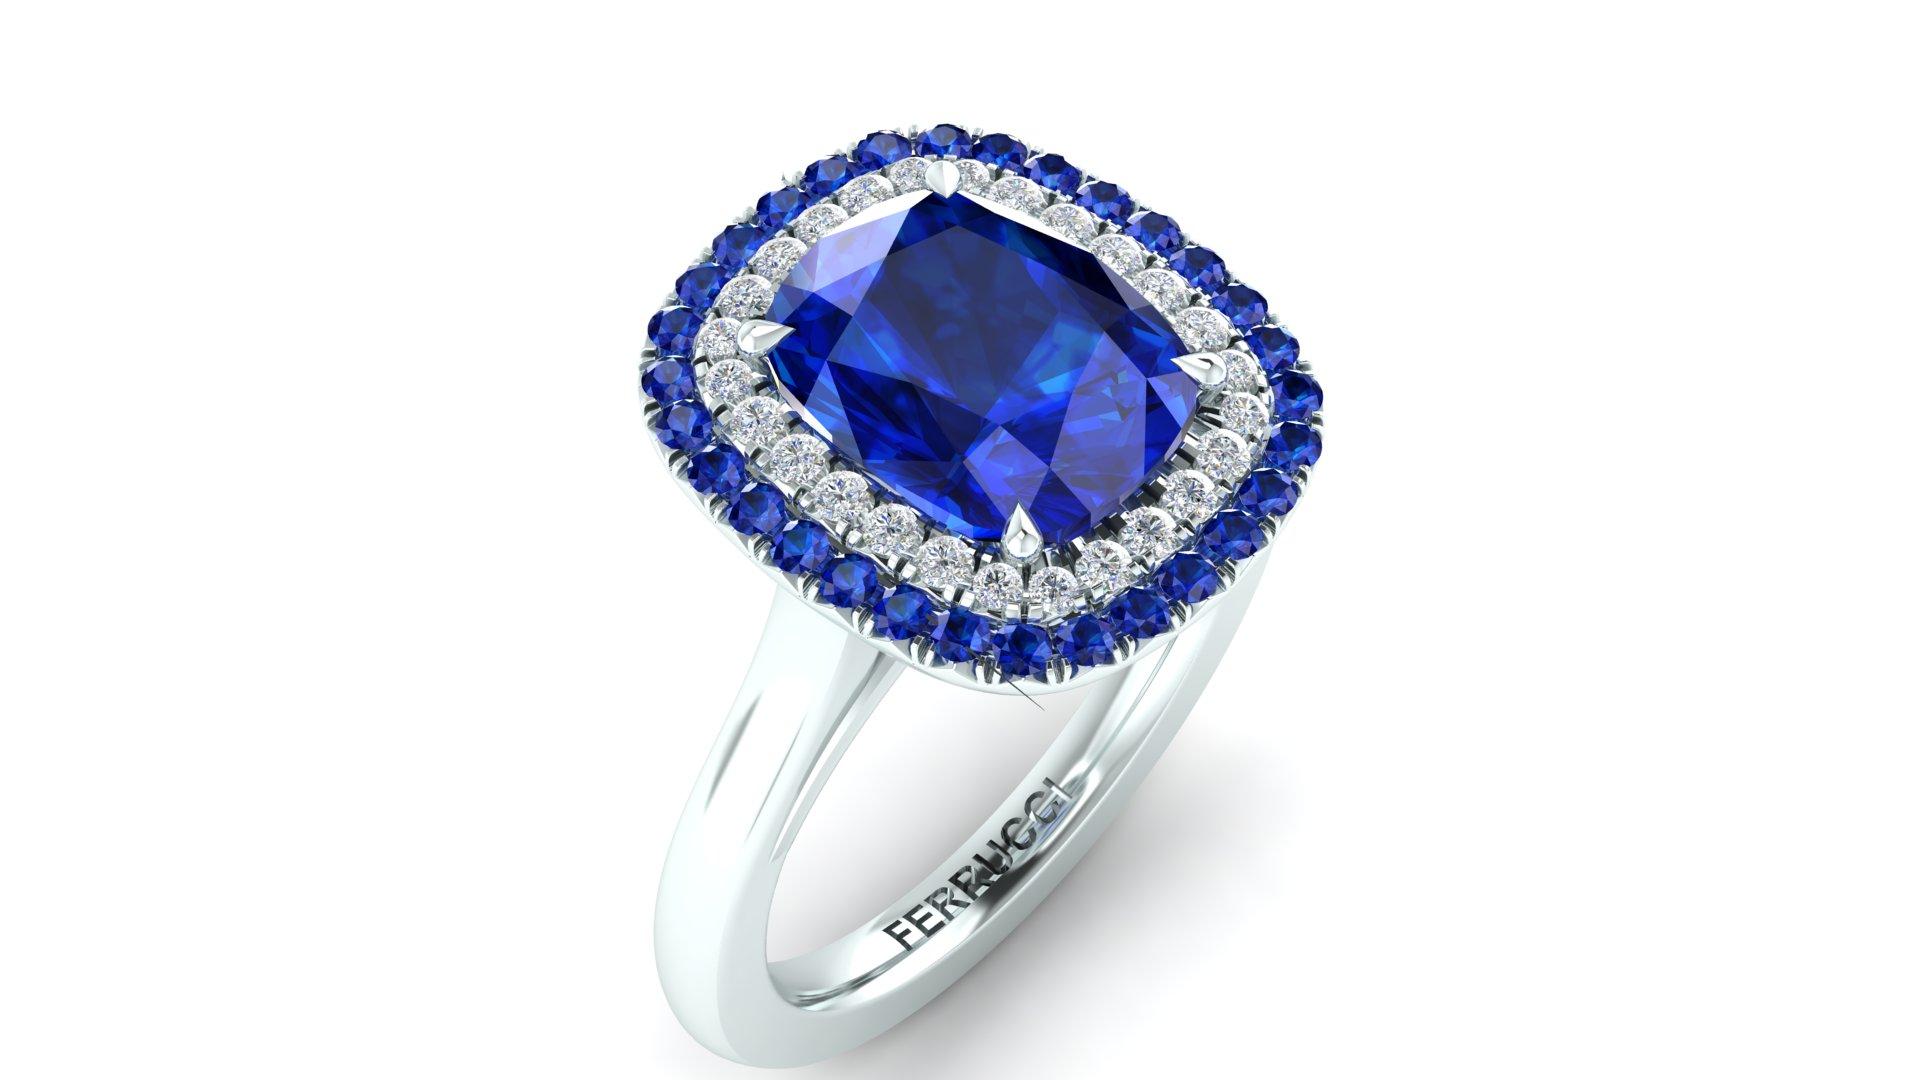 3 Karat blauer Saphir in der Mitte eines doppelten Saphir- und Diamantenhalos mit einem Gesamtgewicht von 0,25ct und einem ungefähren Karatgewicht von 0,10 Karat.
Auf Bestellung gefertigt, kann die Fingergröße perfekt angepasst werden
